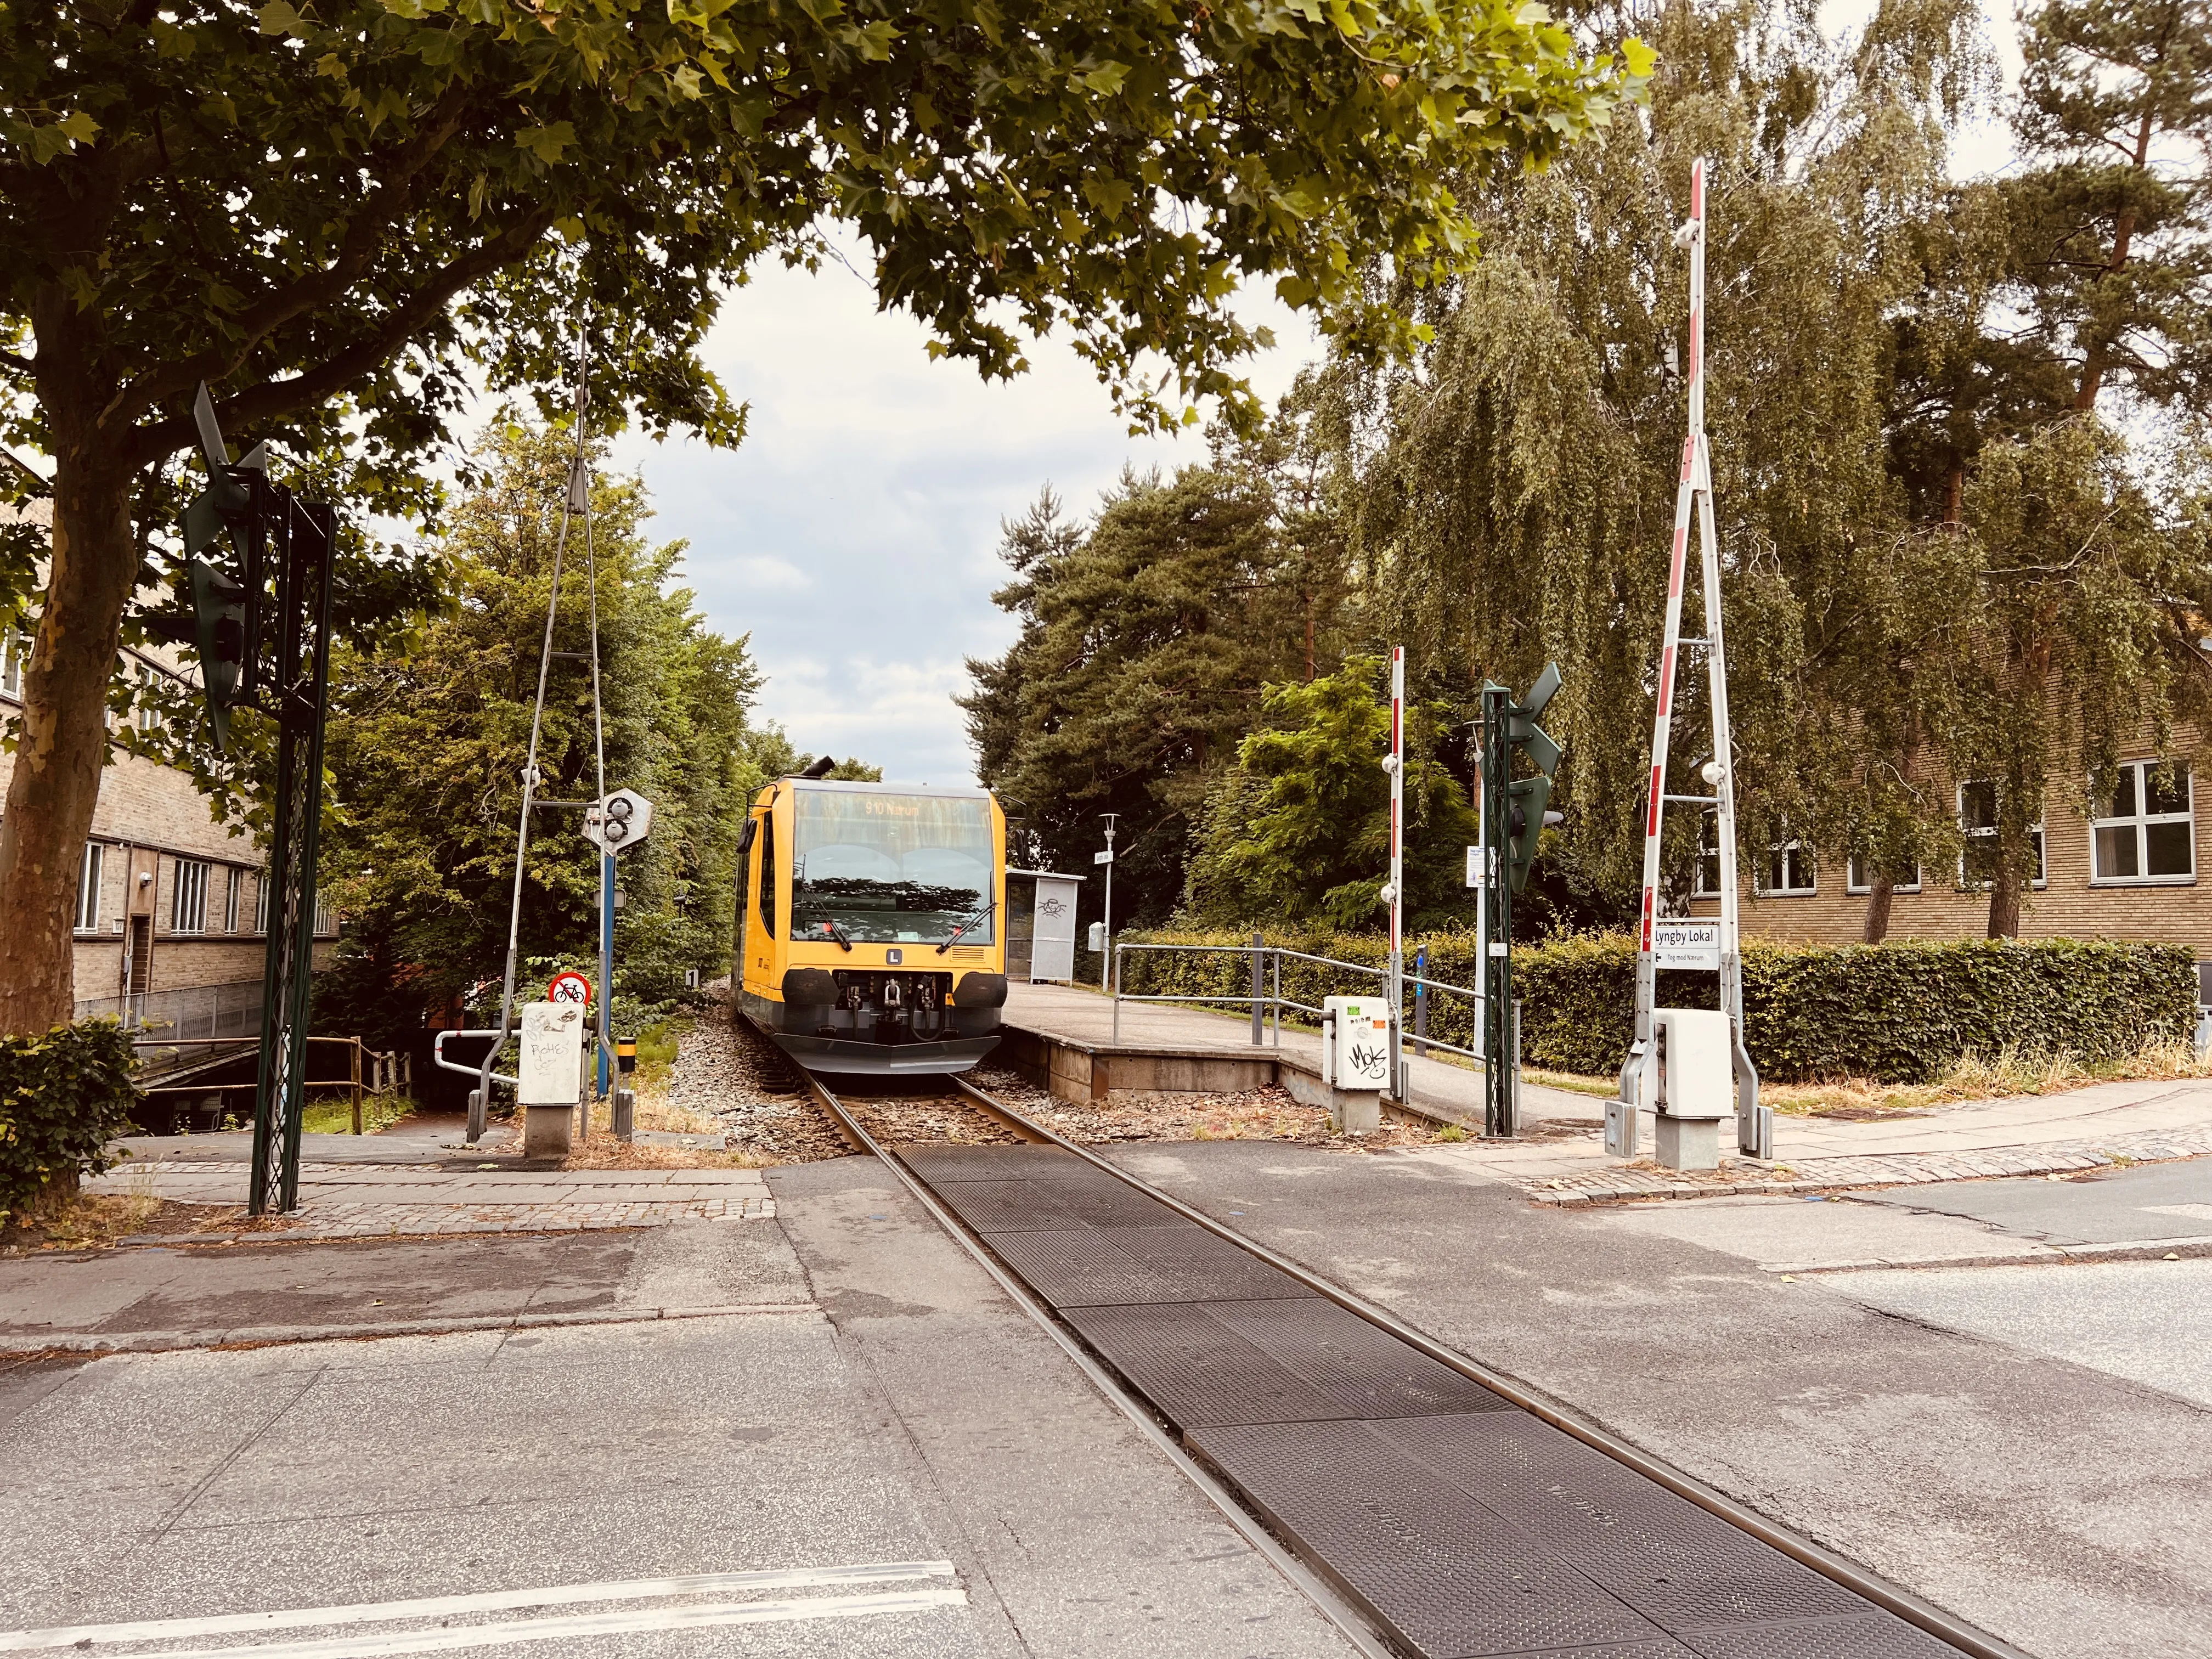 Billede af tog ud for Lyngby Lokal Station.